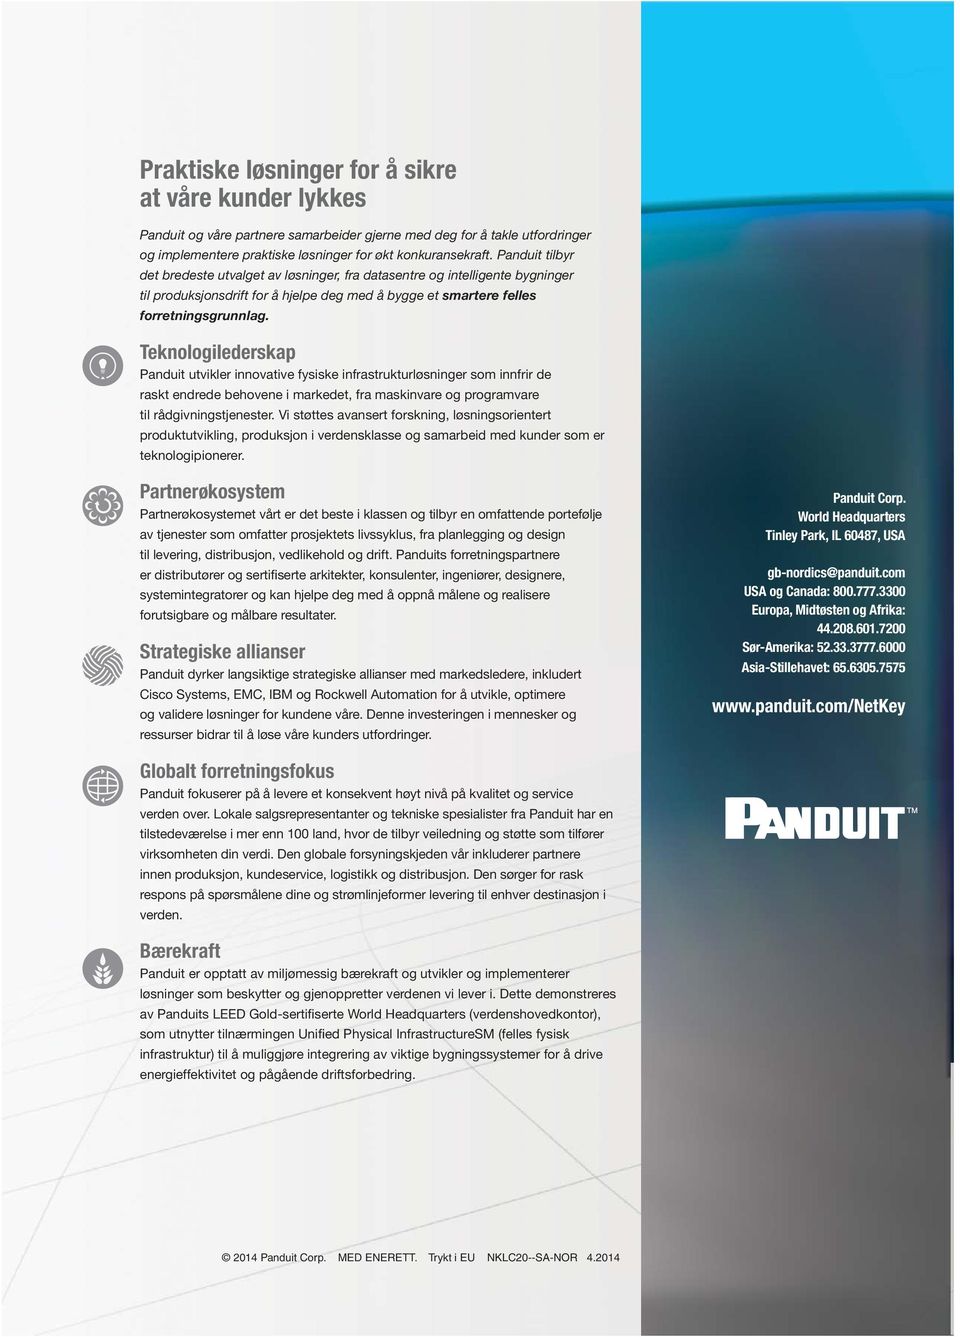 Teknologilederskap Panduit utvikler innovative fysiske infrastrukturløsninger som innfrir de raskt endrede behovene i markedet, fra maskinvare og programvare til rådgivningstjenester.